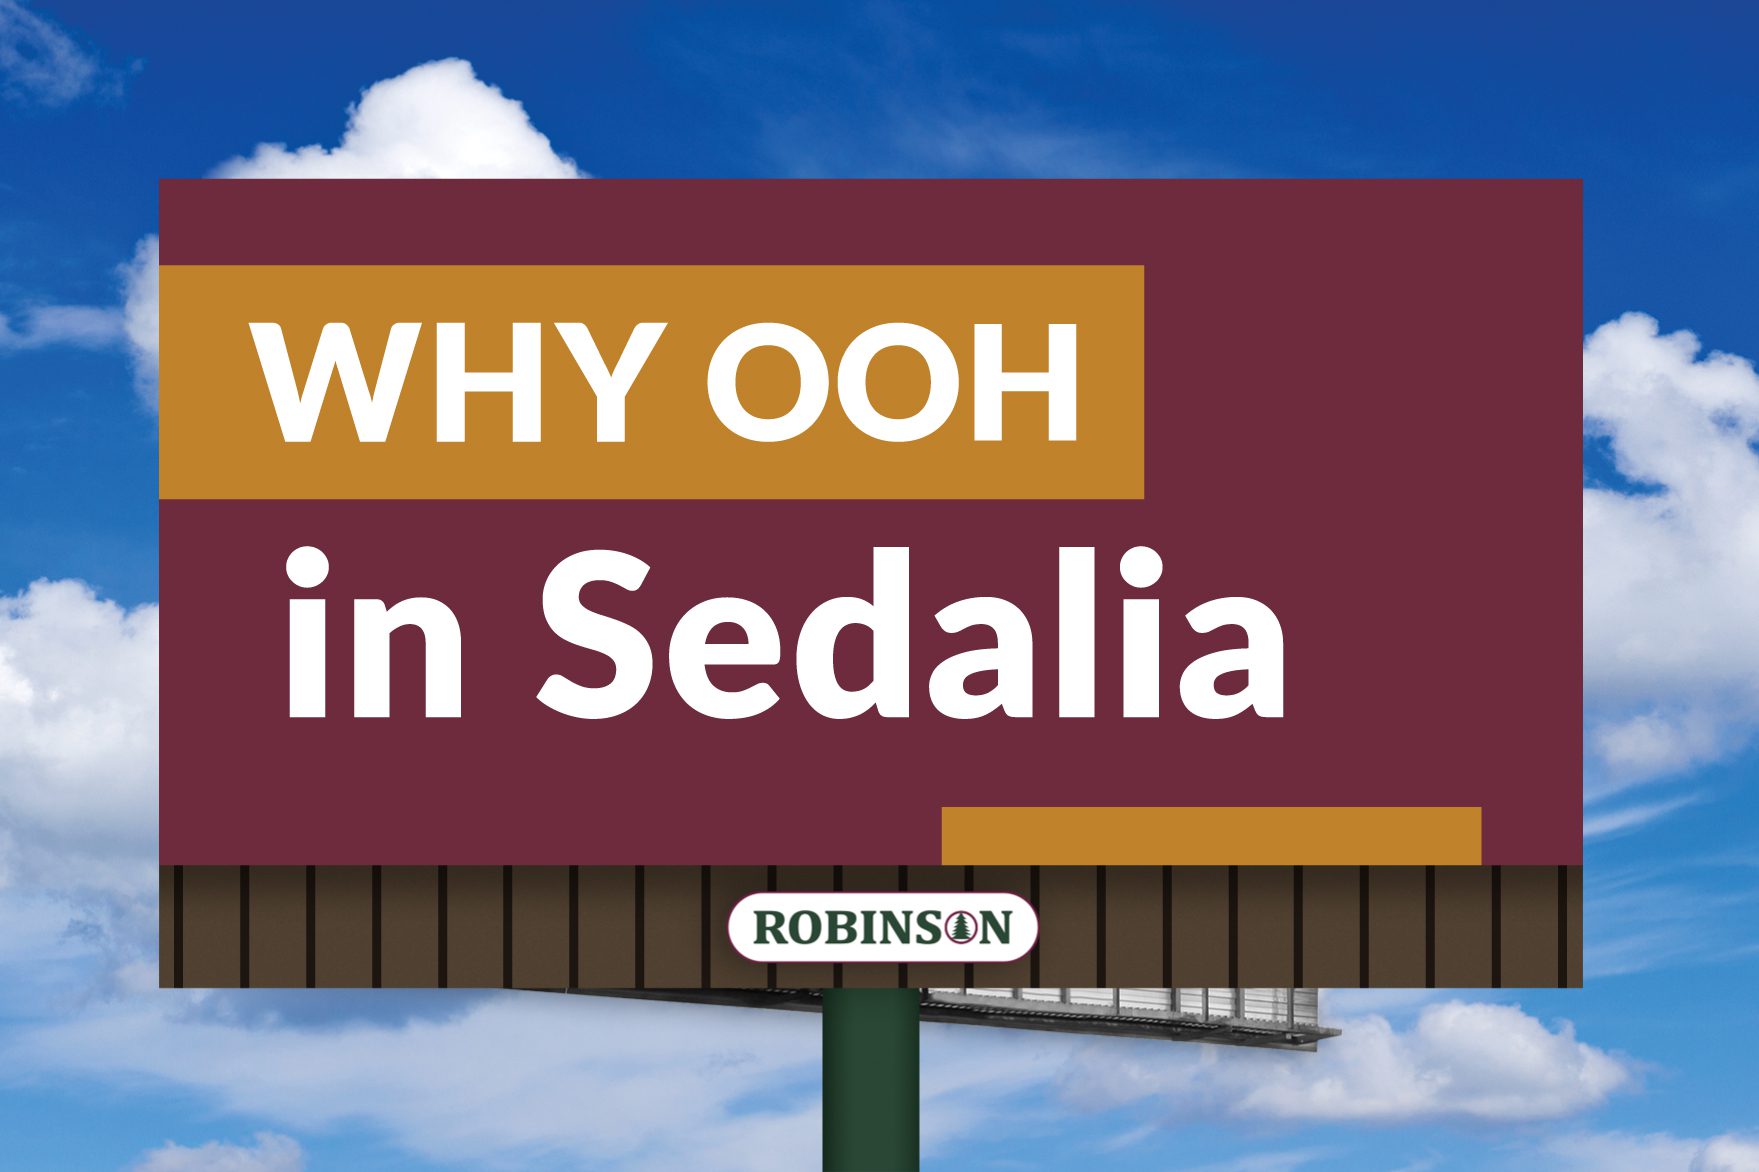 Sedalia, Missouri digital billboard advertising